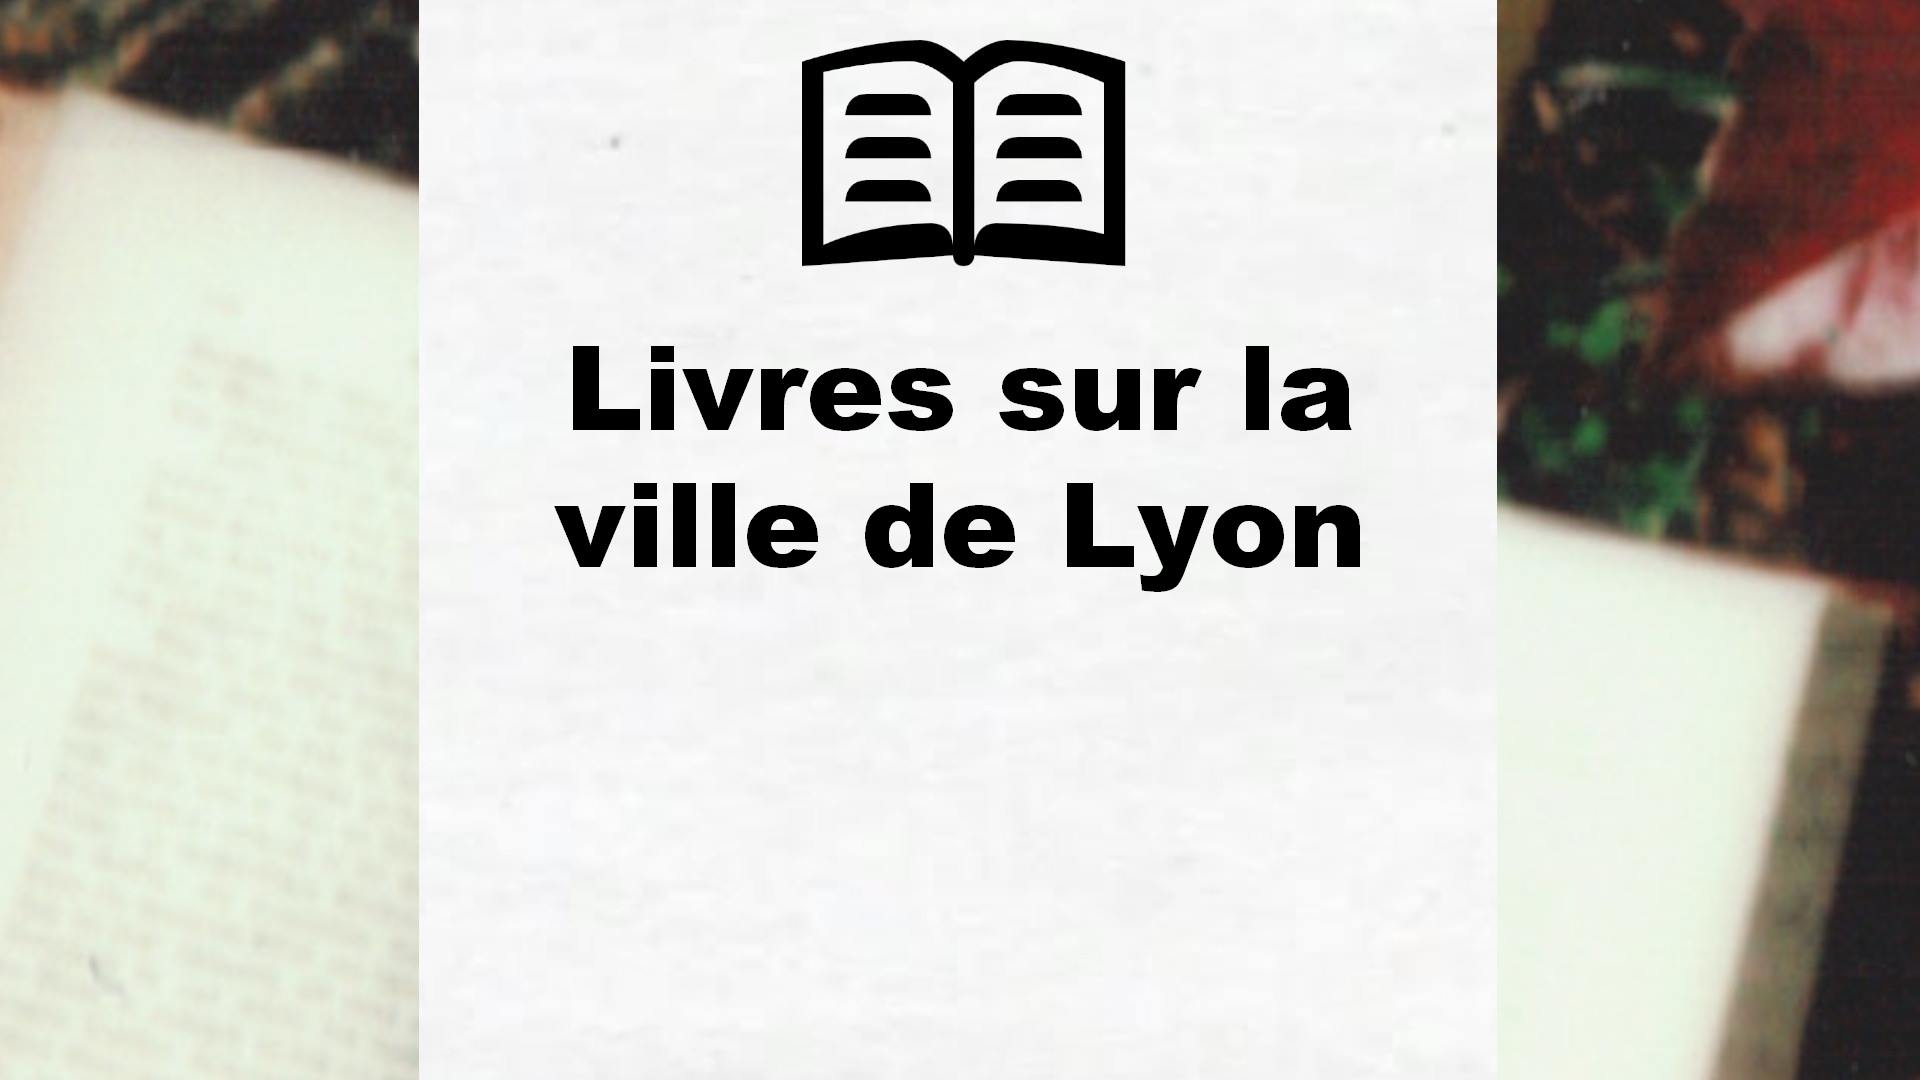 Livres sur la ville de Lyon